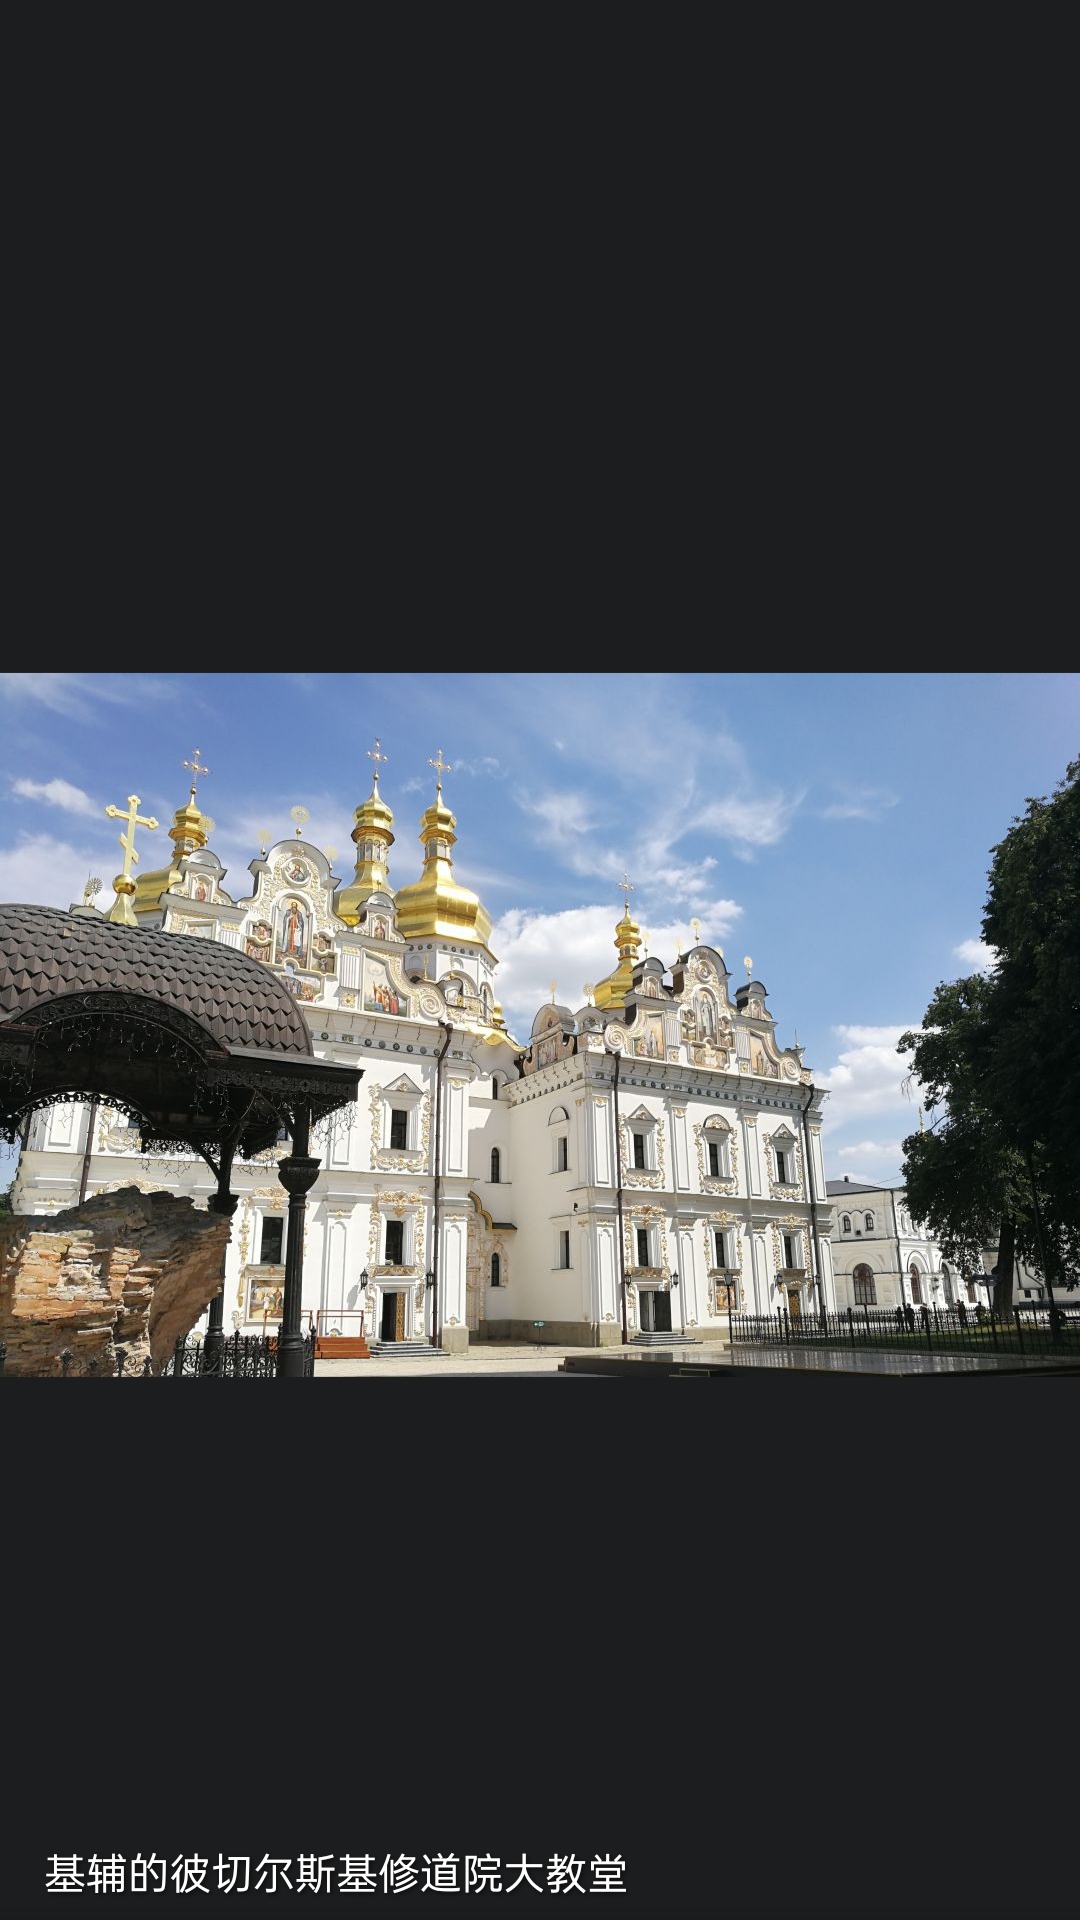 基辅（Kyiv, Киев），古译“乞瓦”[6]，乌克兰的首都兼经济、文化、政治中心。位于乌克兰中北